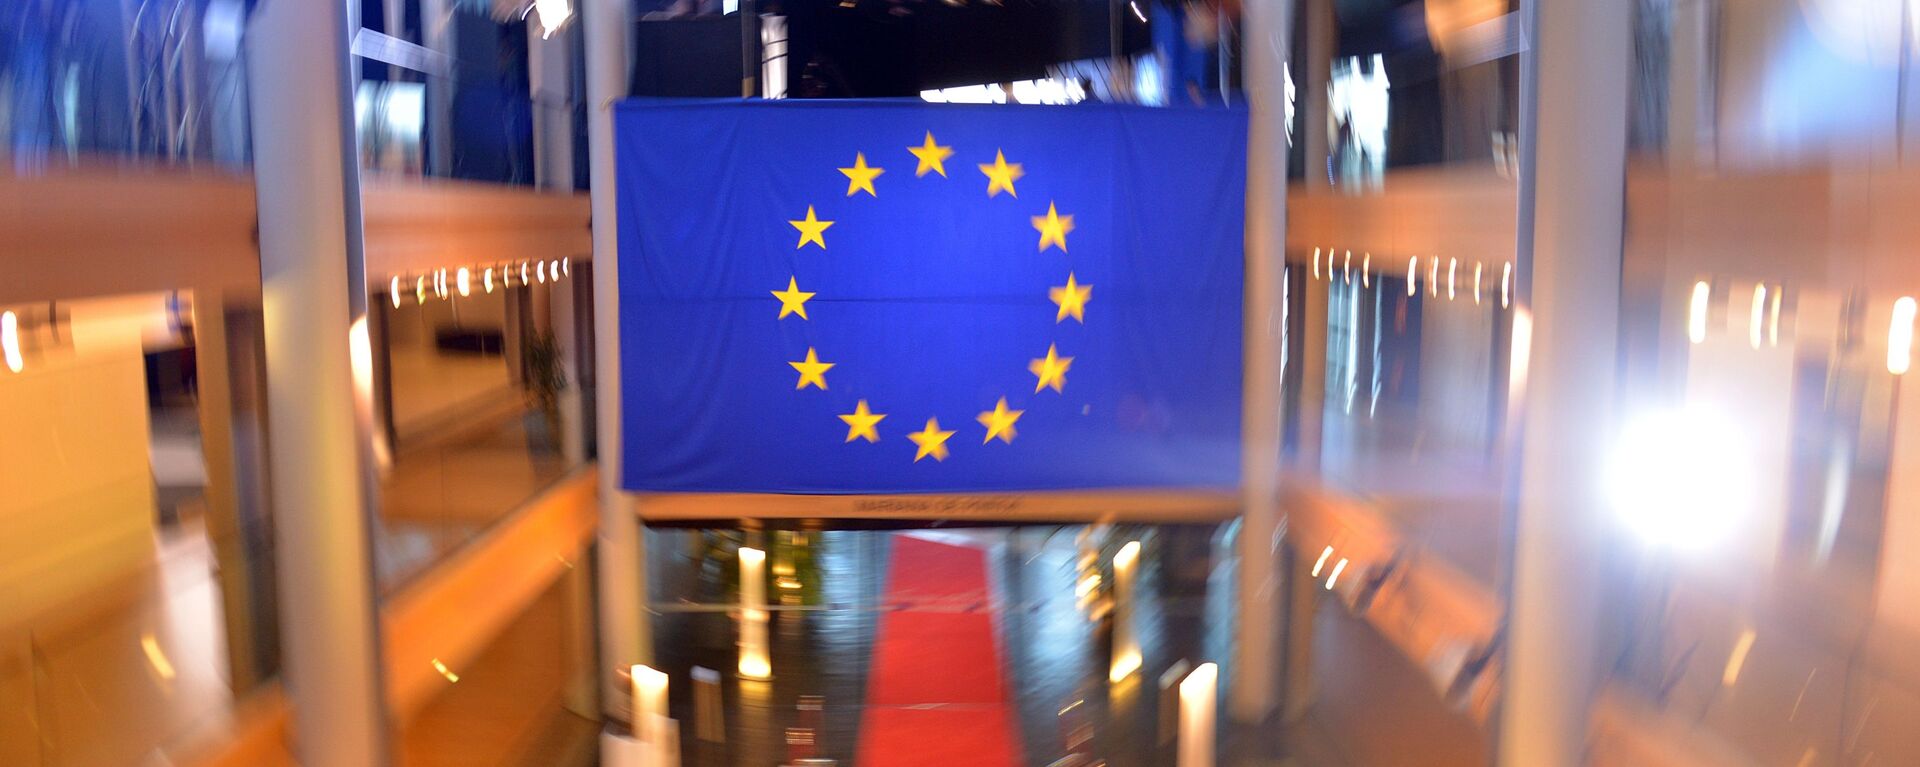 Флаг Евросоюза в главном здании Совета Европы в Страсбурге - Sputnik Латвия, 1920, 26.06.2021